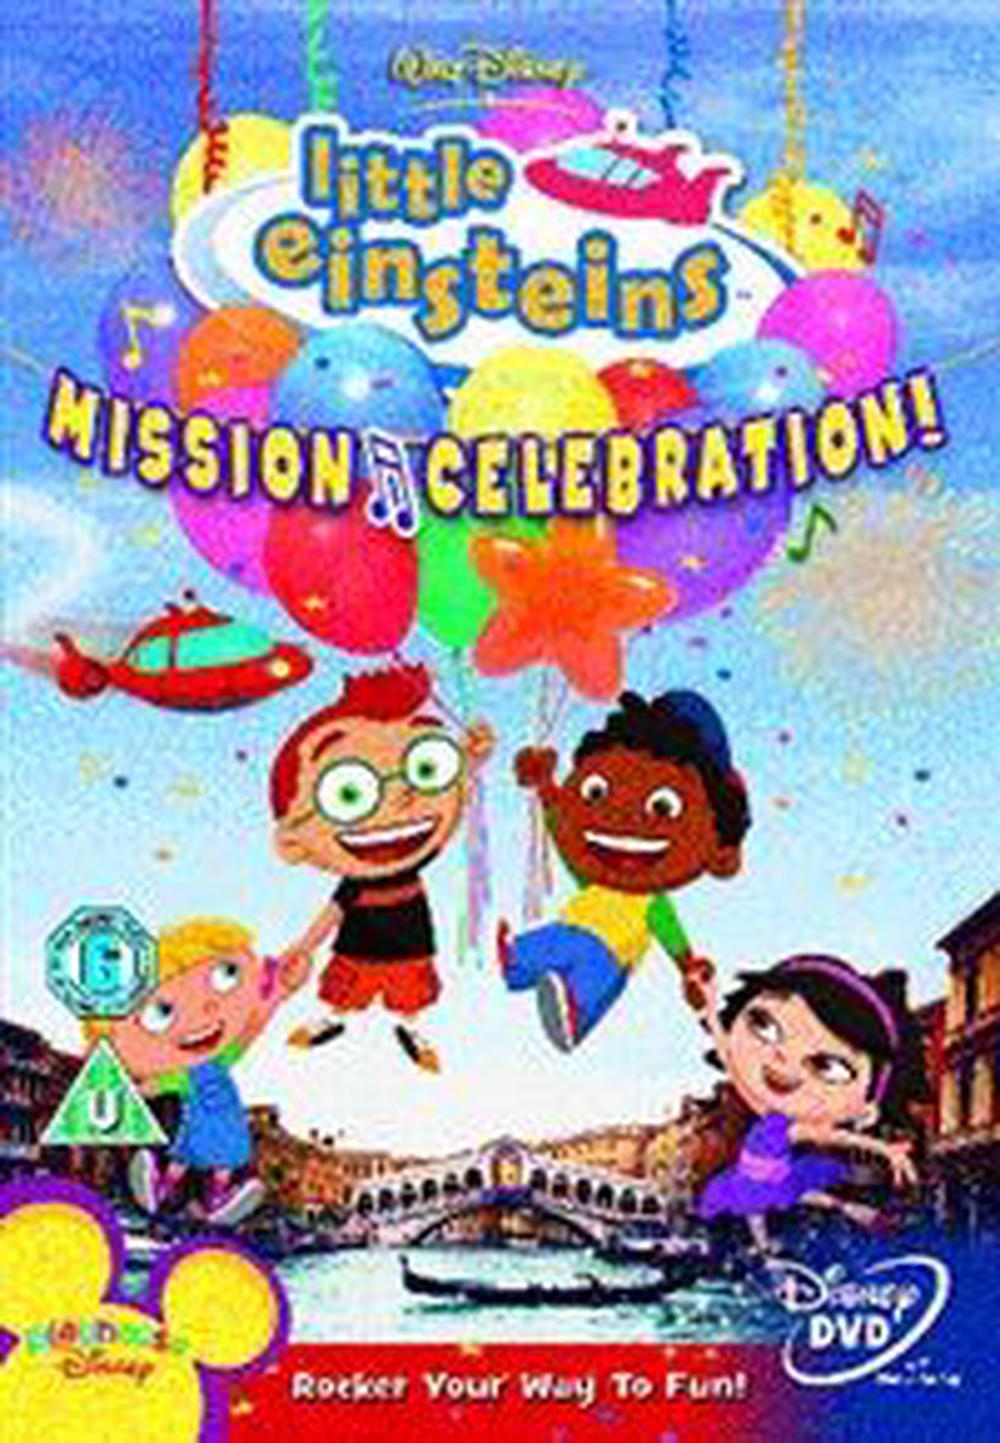 Little Einsteins Volume 1 Mission Celebration Dvd Region 2 Free